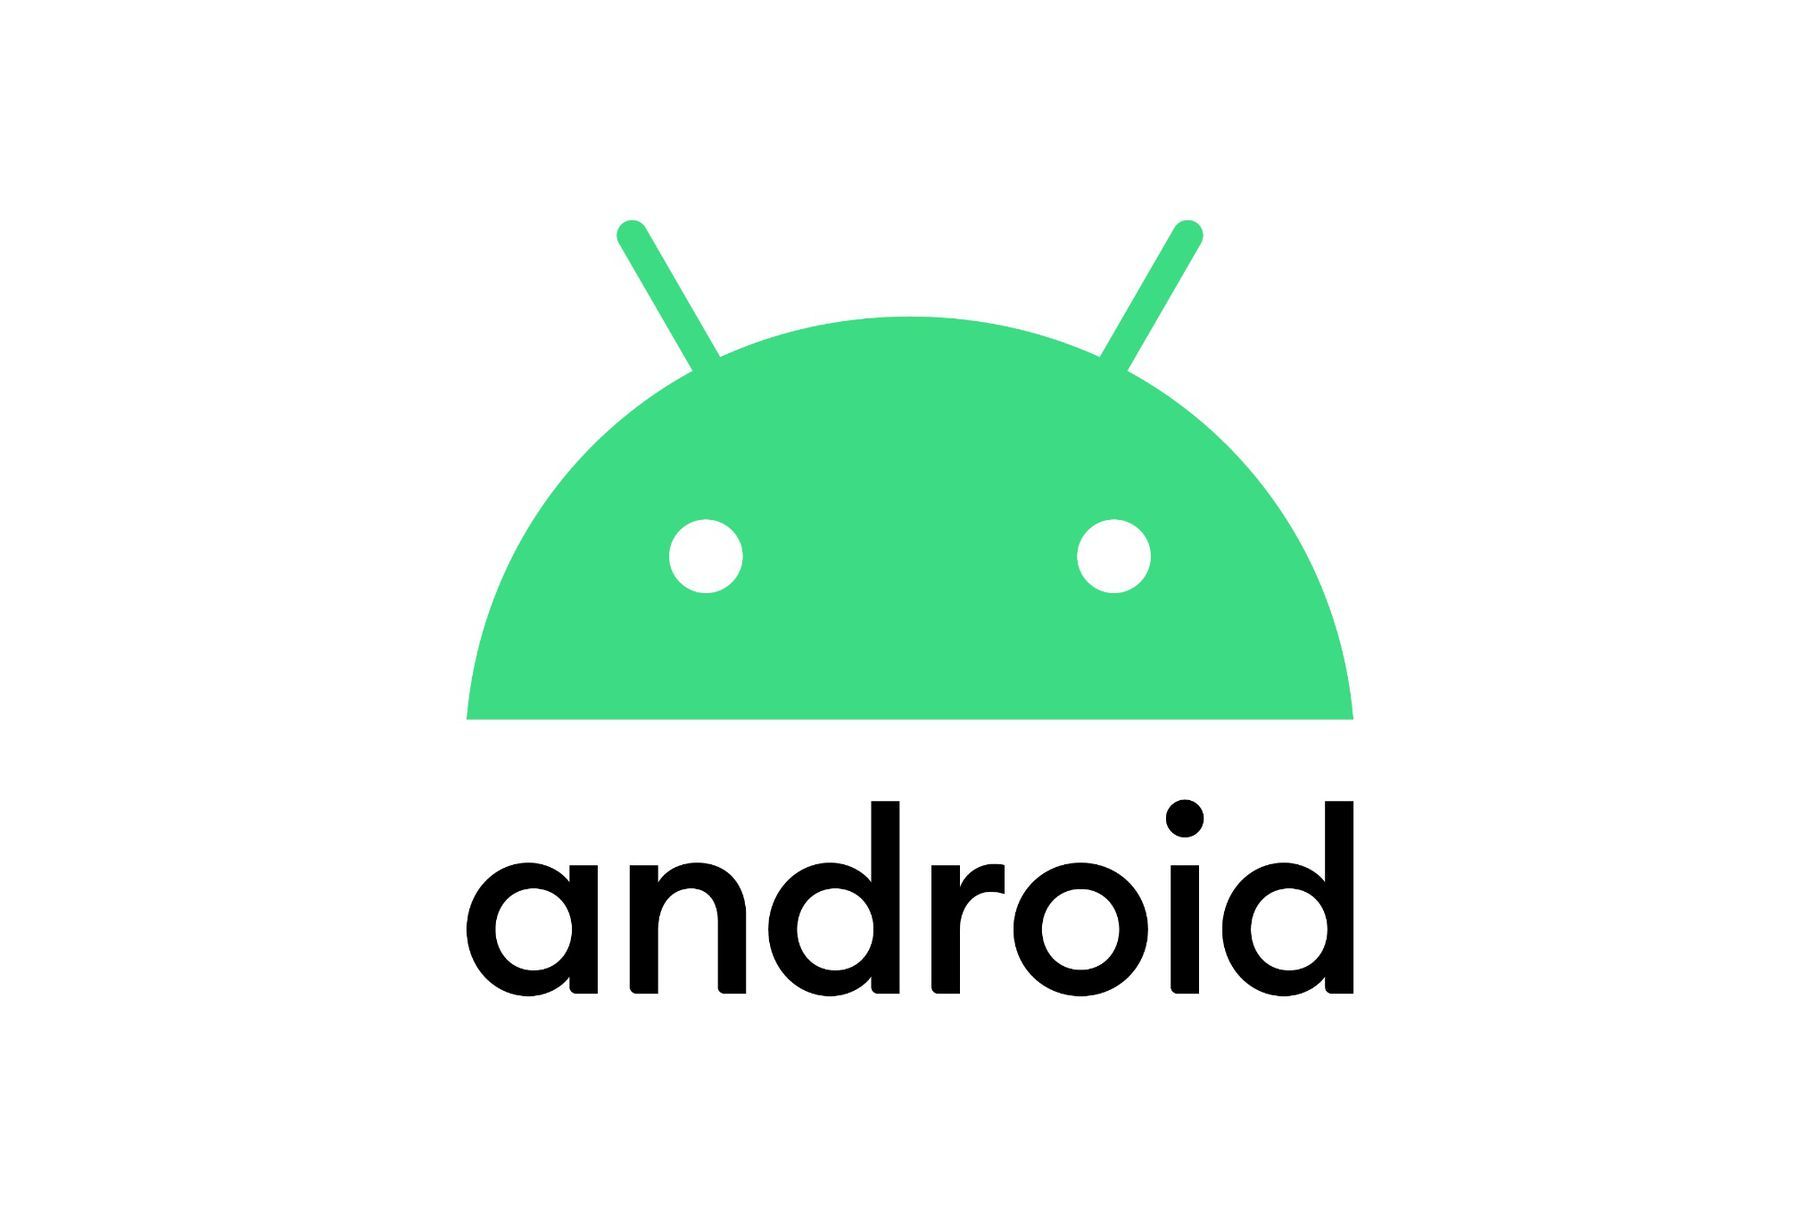 这是Android操作系统的官方标志，绿色机器人头部造型，两个黑色眼睛，上方有两根天线，下方是“Android”字样。